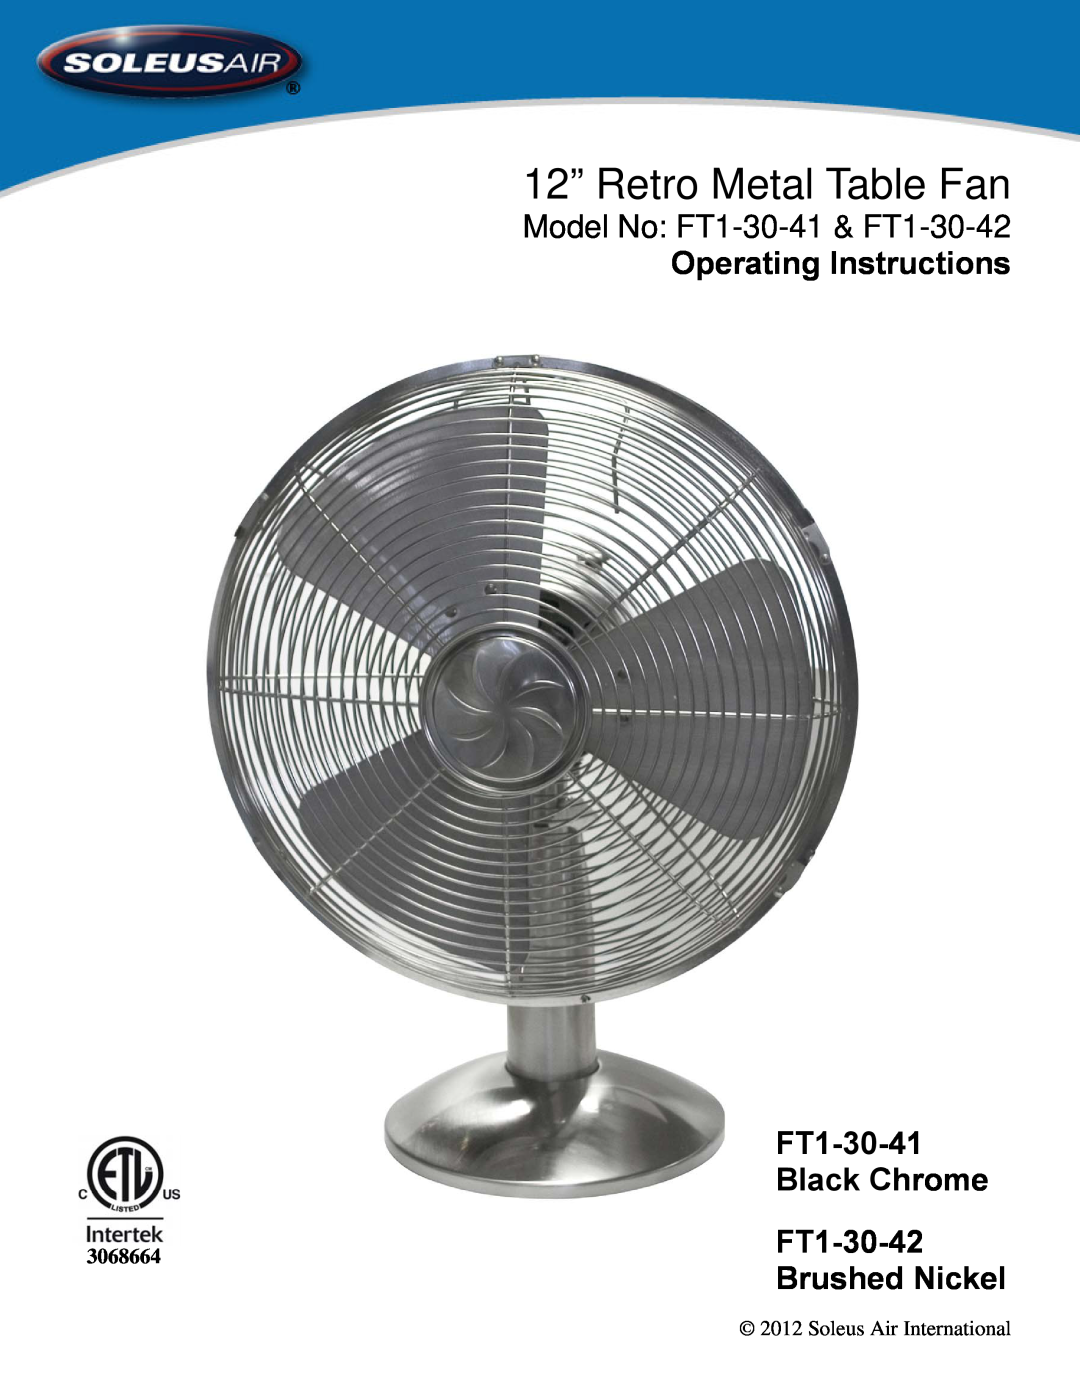 Soleus Air operating instructions 12” Retro Metal Table Fan, Model No FT1-30-41& FT1-30-42, Operating Instructions 